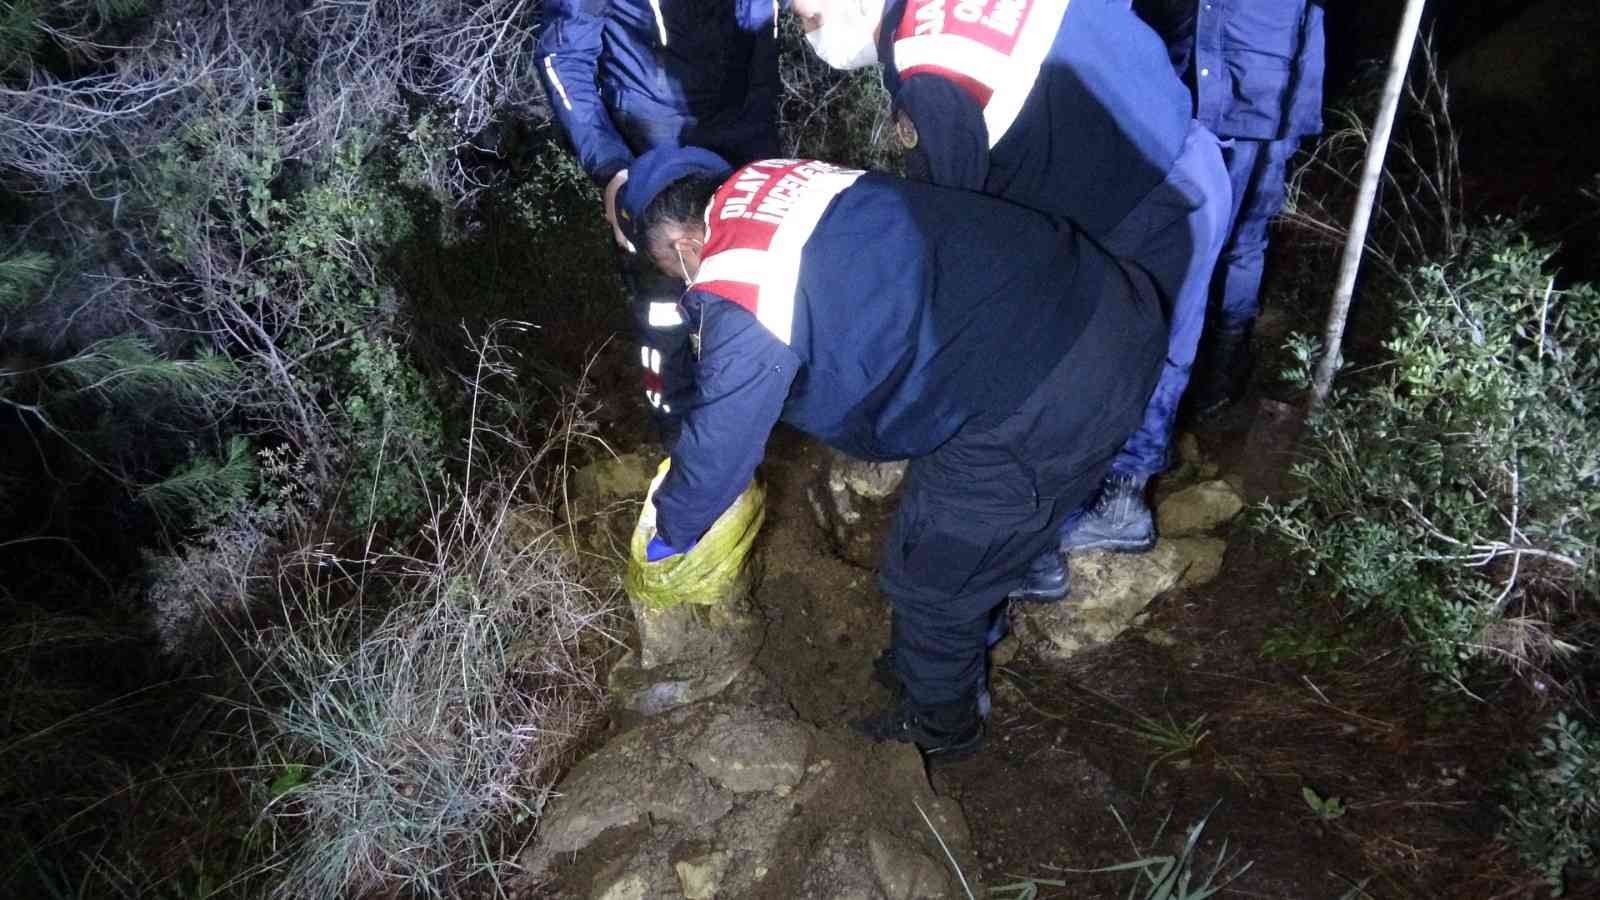 Mezarlık yakınındaki ormanlık alanda ağzı bağlanıp gömülmüş köpek cesedi bulundu #antalya